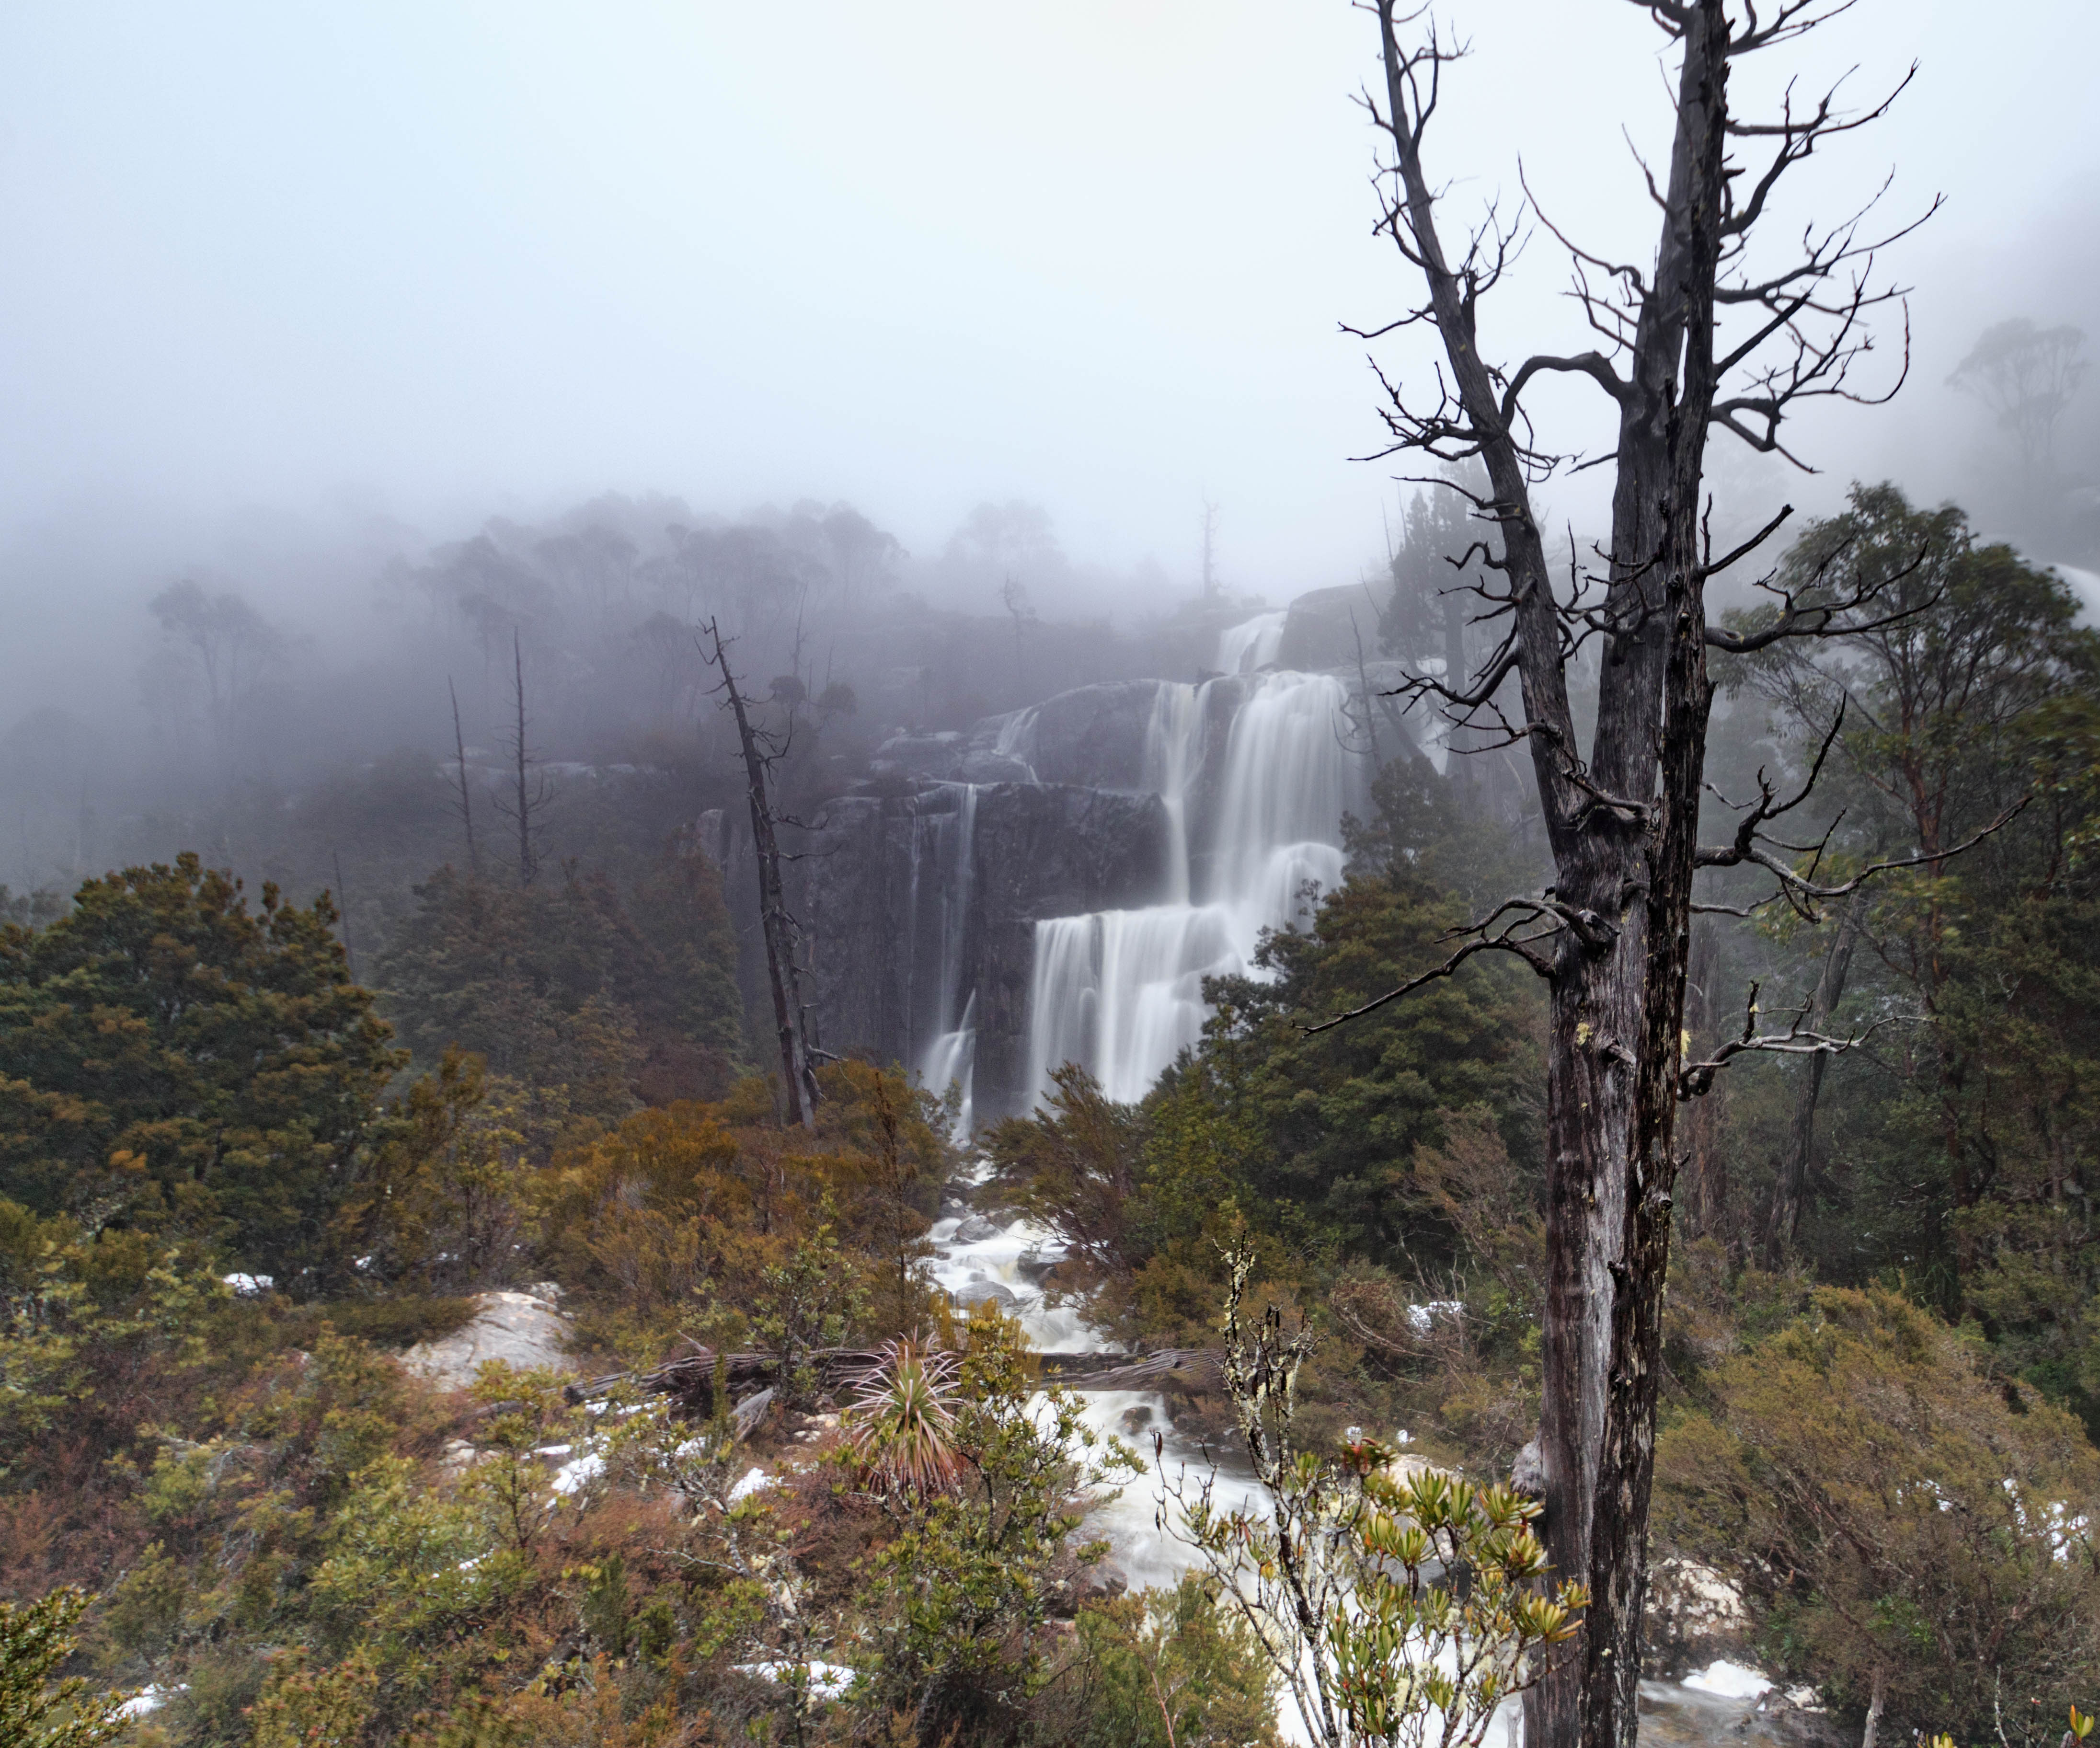 Grail Falls on a foggy day